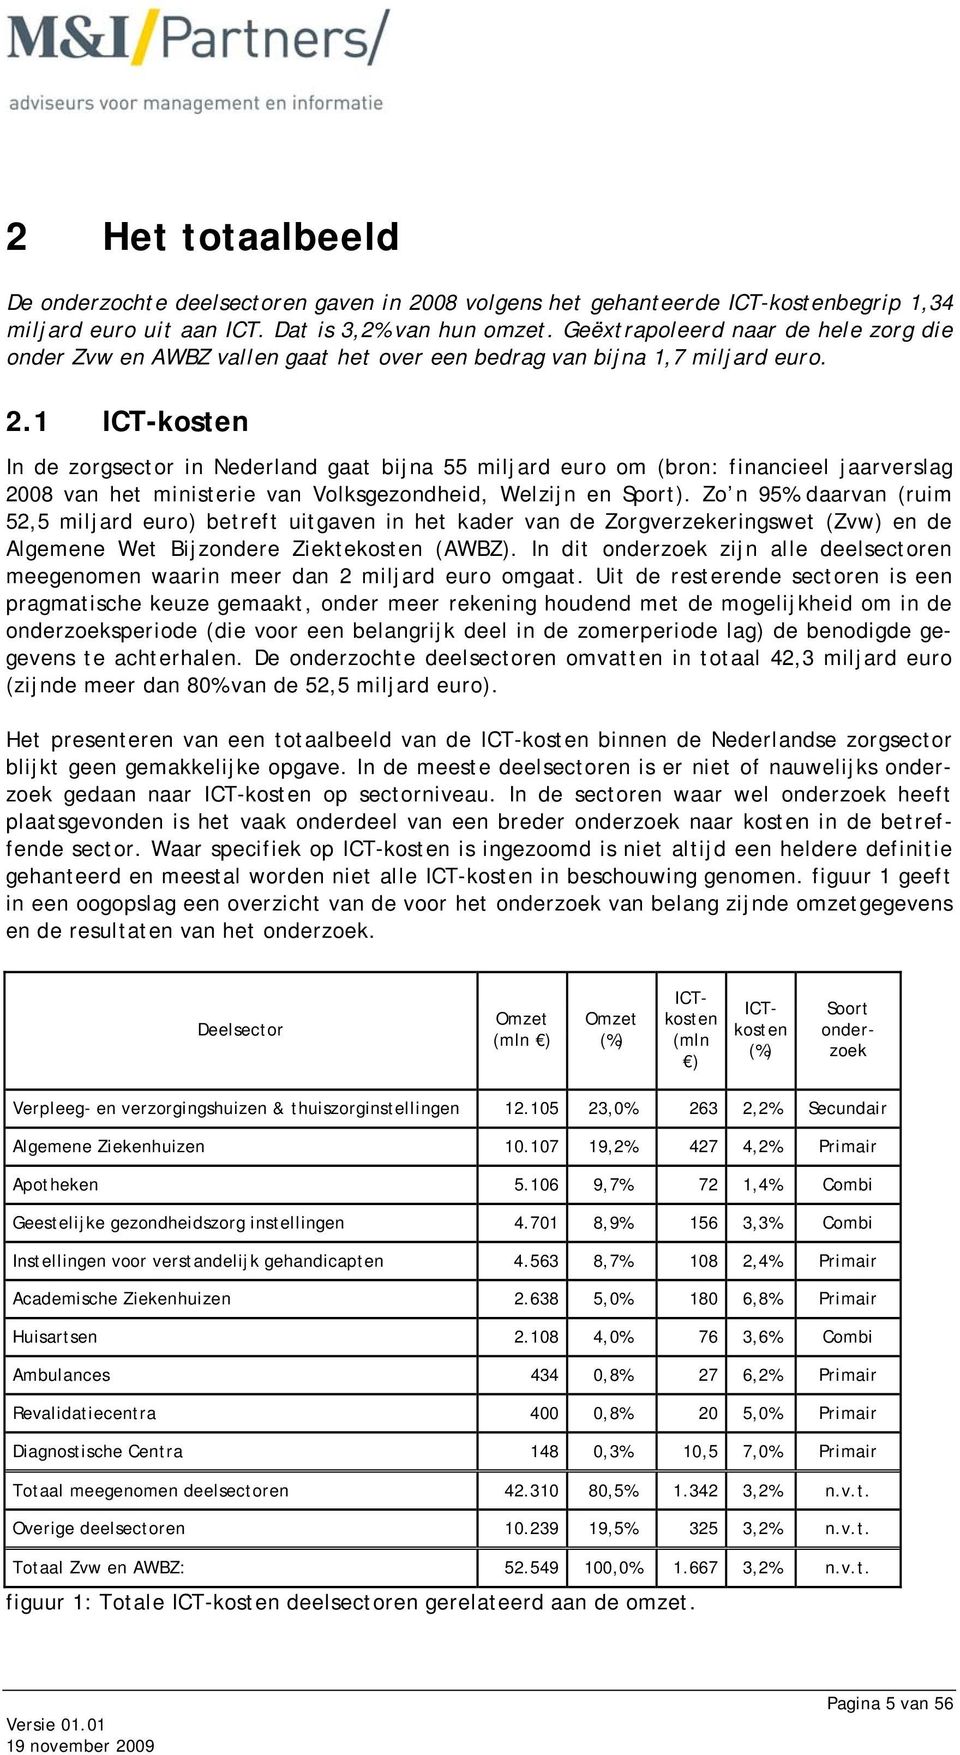 1 ICT-kosten In de zorgsector in Nederland gaat bijna 55 miljard euro om (bron: financieel jaarverslag 2008 van het ministerie van Volksgezondheid, Welzijn en Sport).